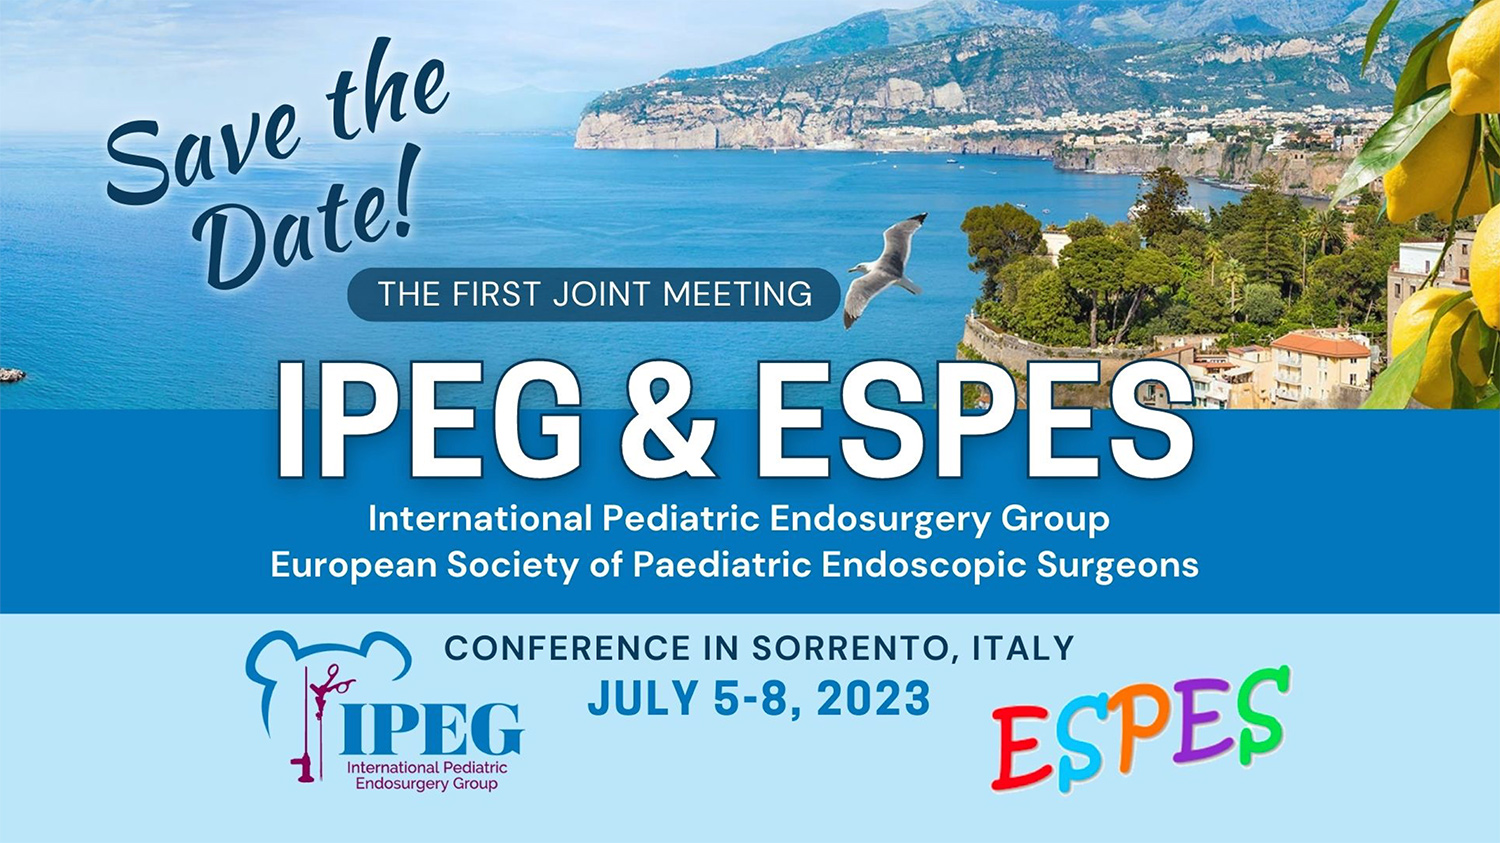 congres IPEG&ESPES